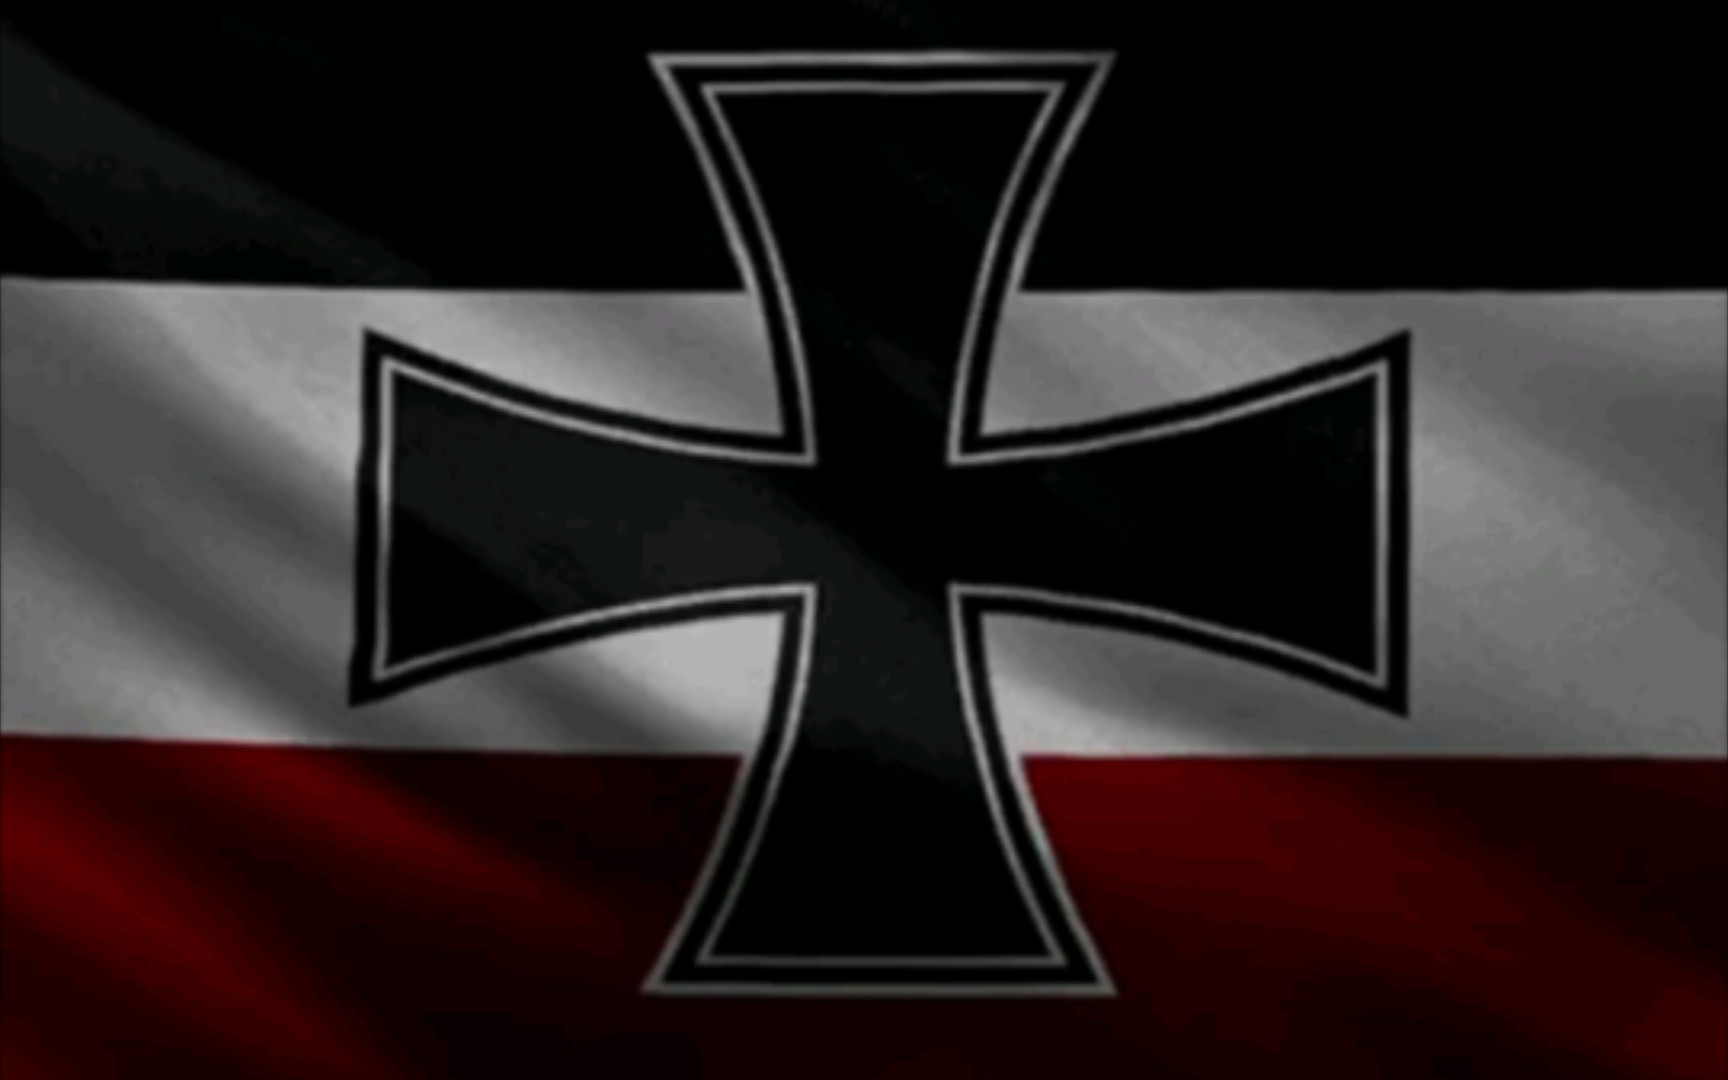 二战盟军旗帜图片